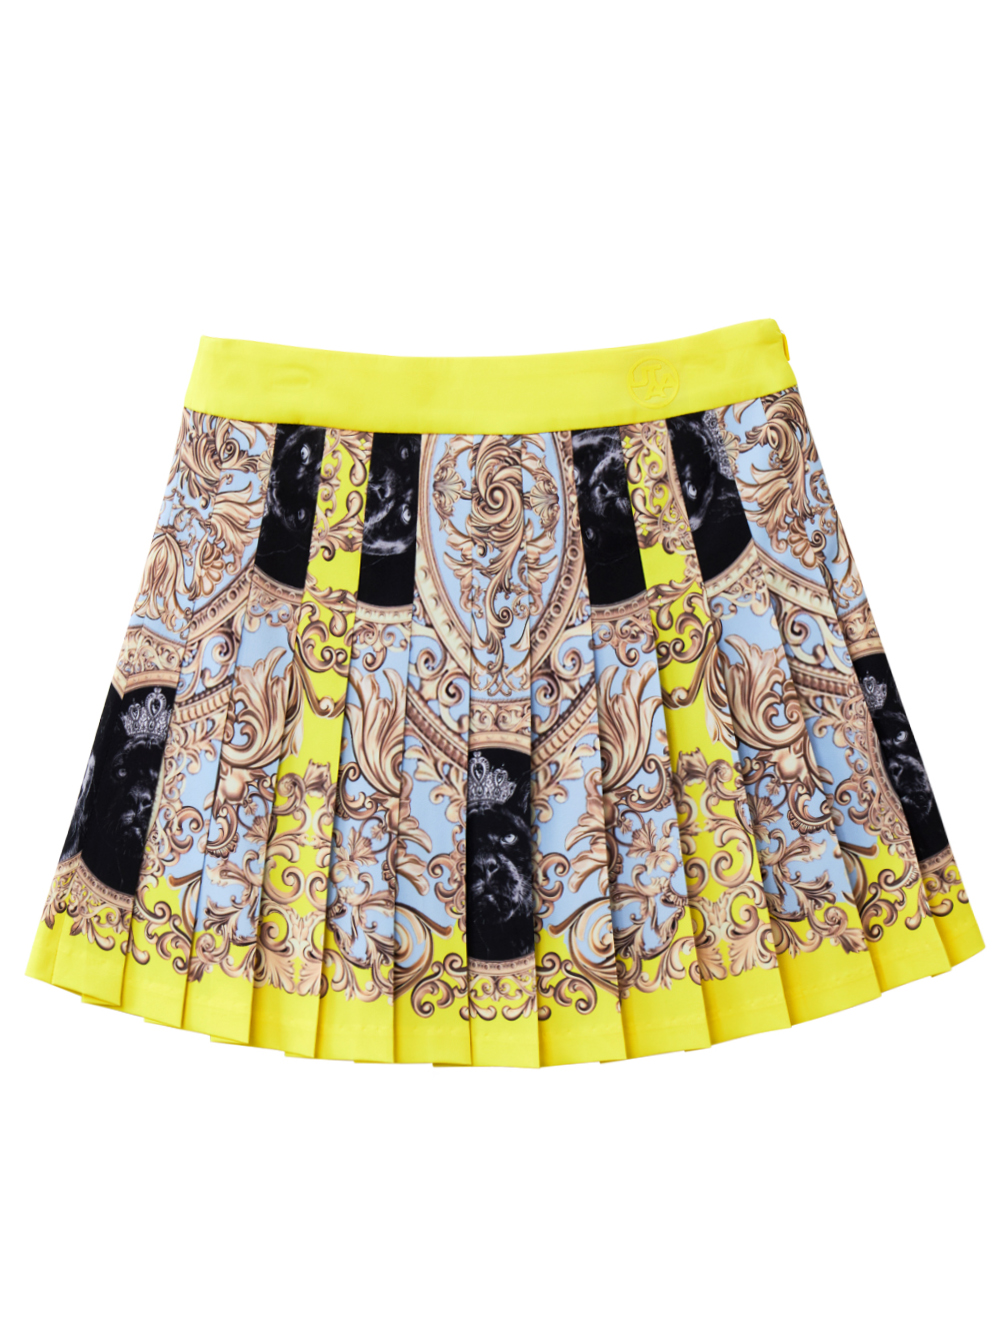 UTAA Folding Baroque Pleats Skirt : Yellow (UB2SKF302YE)